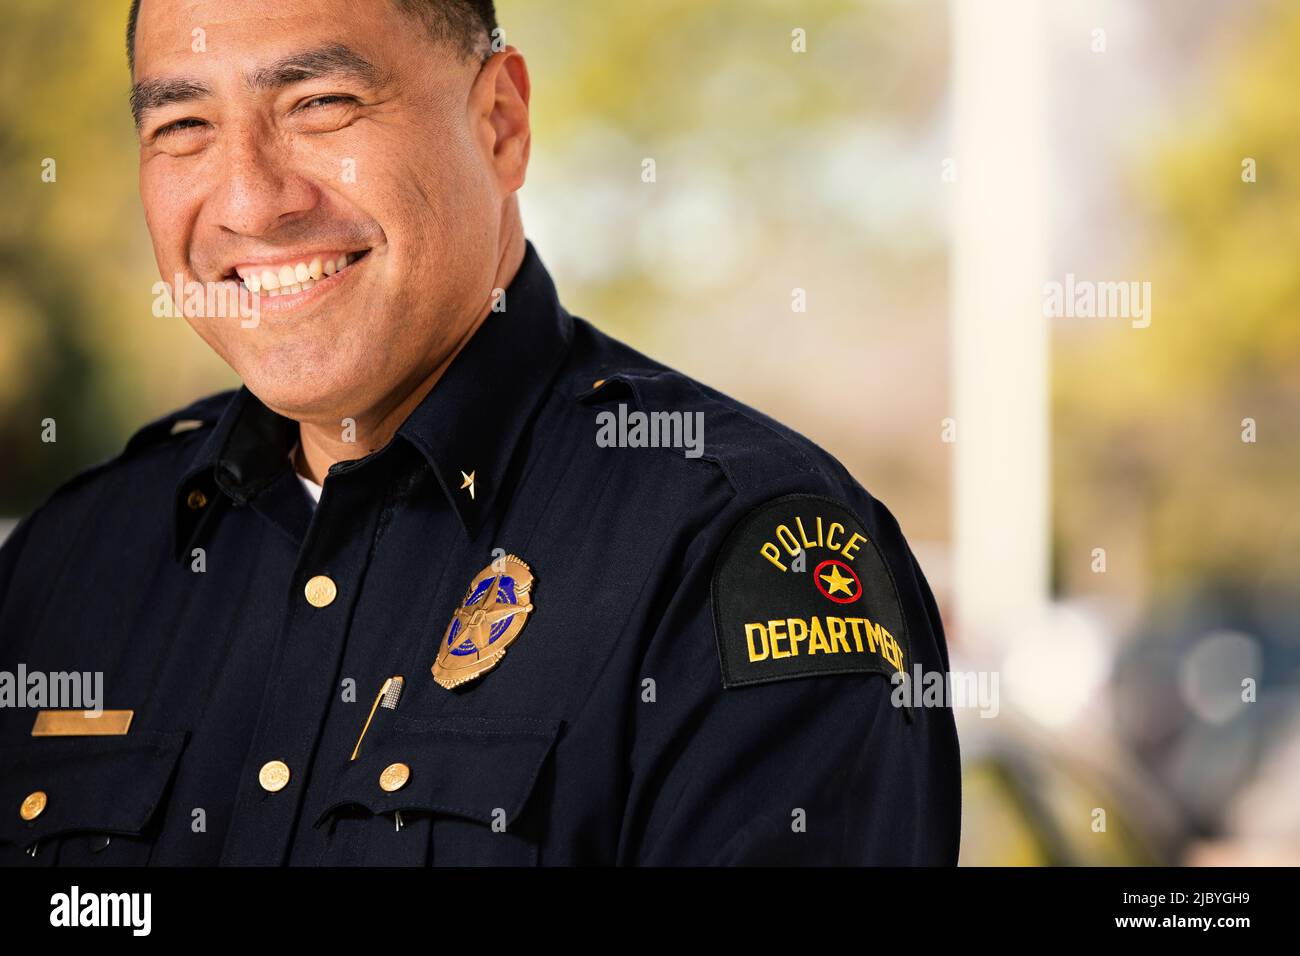 Porträt eines Polizisten, der draußen mit gekreuzten Armen steht und lächelnd auf die Kamera blickt Stockfoto